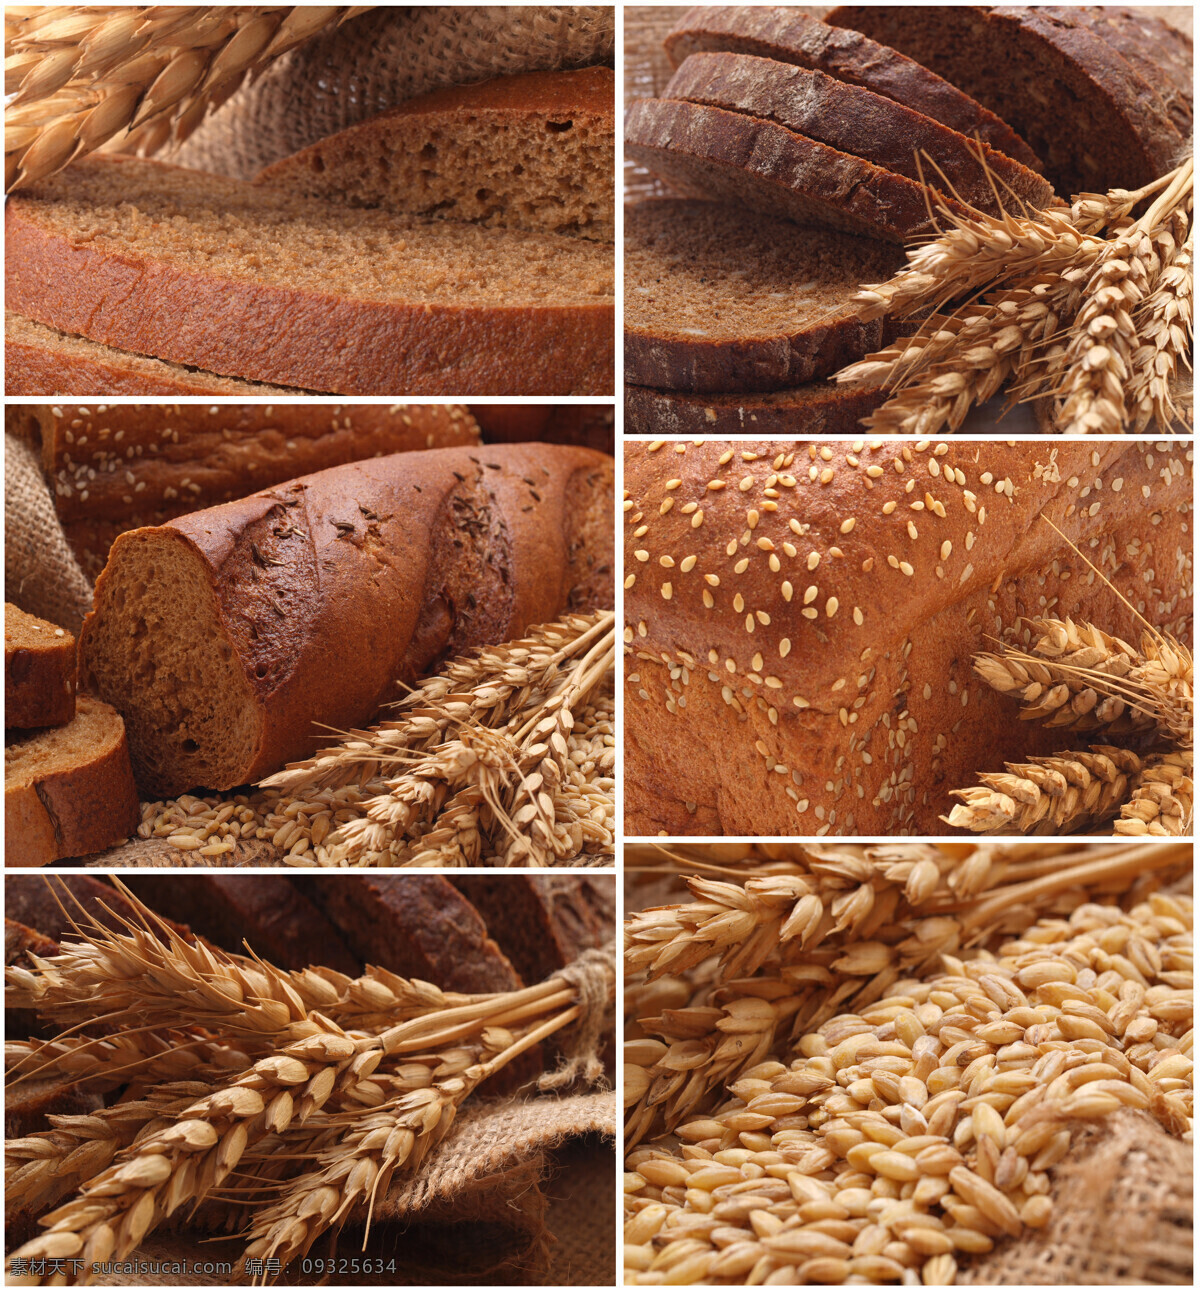 小麦 食物 拼图 面食 面包 面包片 馒头 种子 稻谷 其他类别 生活百科